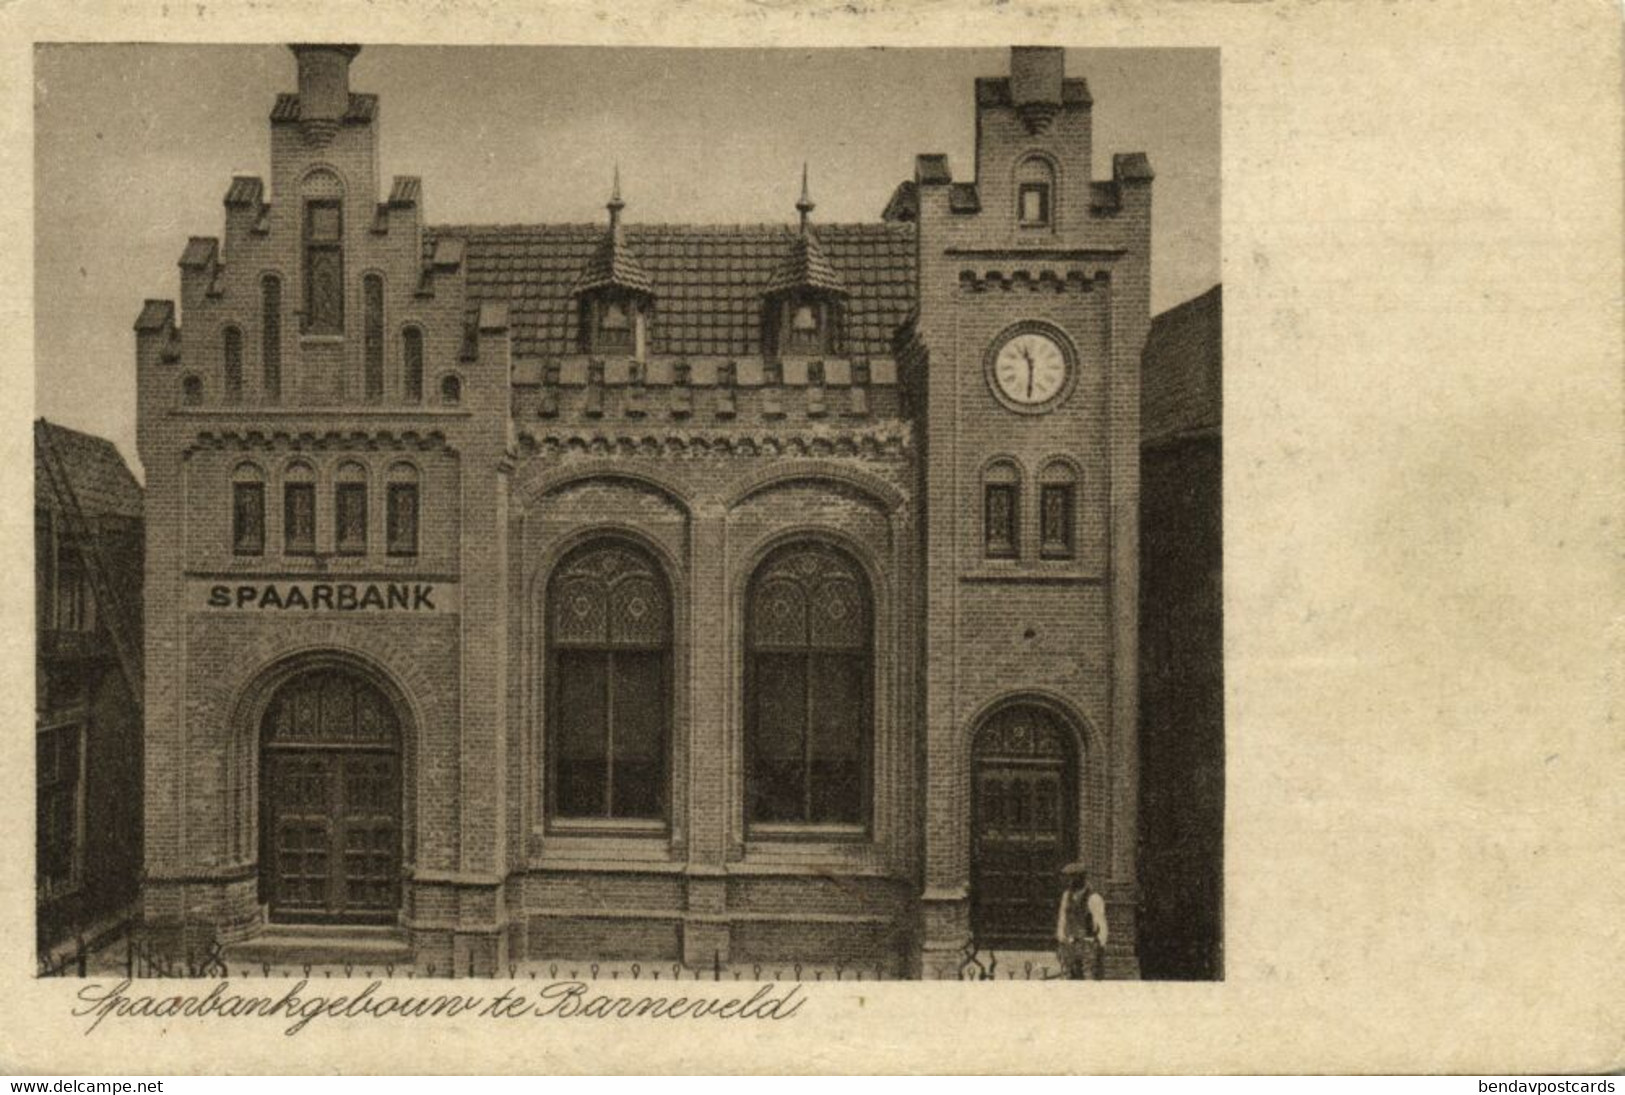 Nederland, BARNEVELD, Spaarbankgebouw (1930s) Ansichtkaart - Barneveld